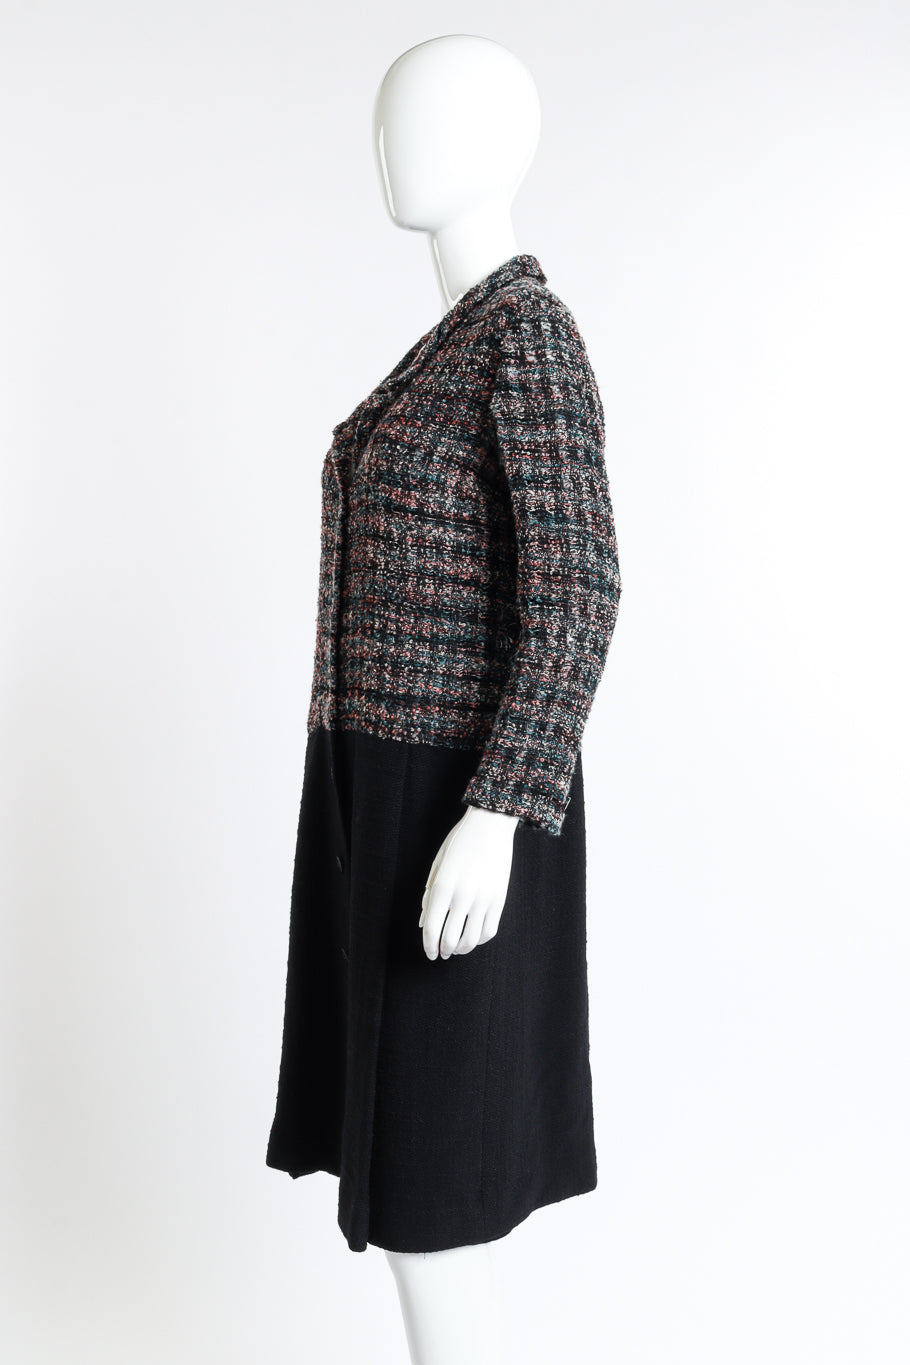 Vintage Chanel Bouclé Plaid Wool Coat side on mannequin @recess la